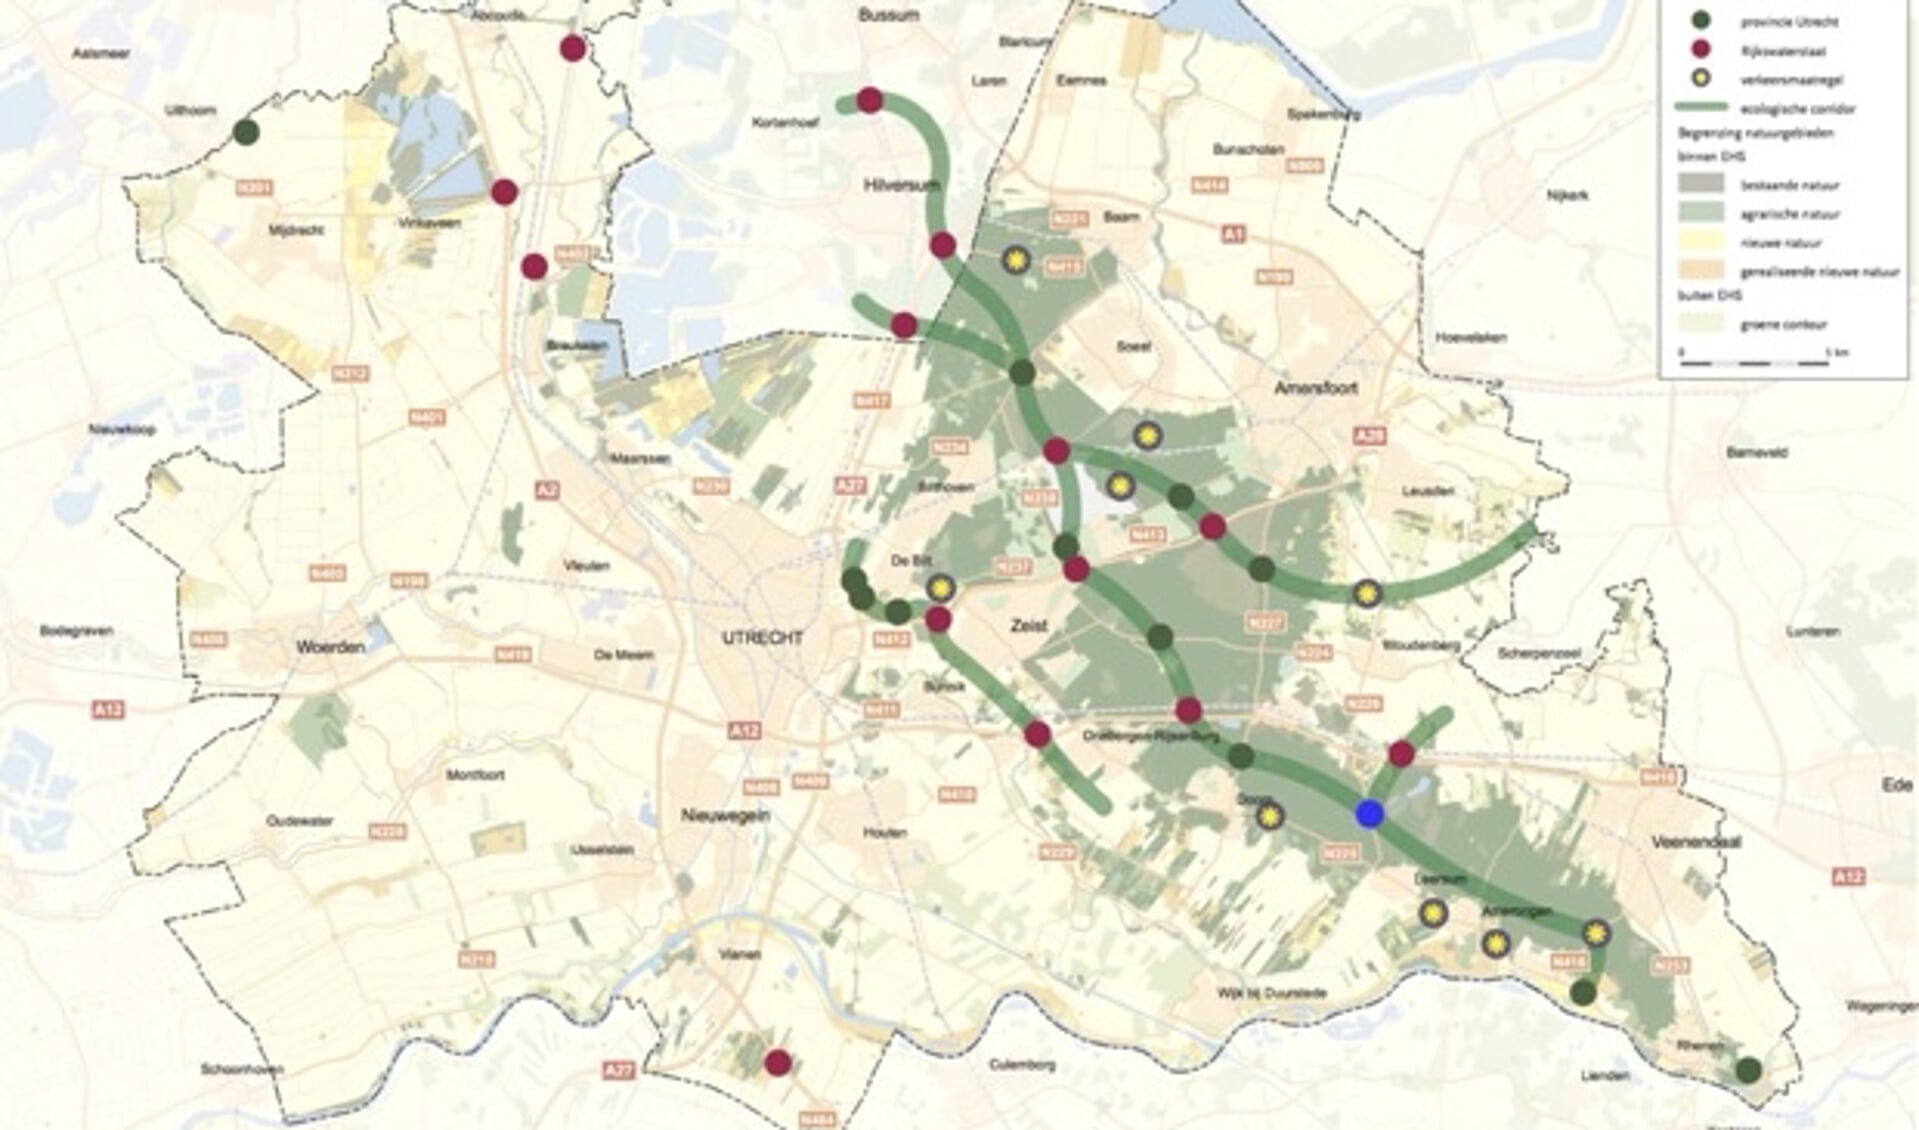 Het ecoduct over de N226 (blauwe punt) vormt een schakel in de verbinding tussen het zuidelijke en middendeel van de Utrechtse Heuvelrug.